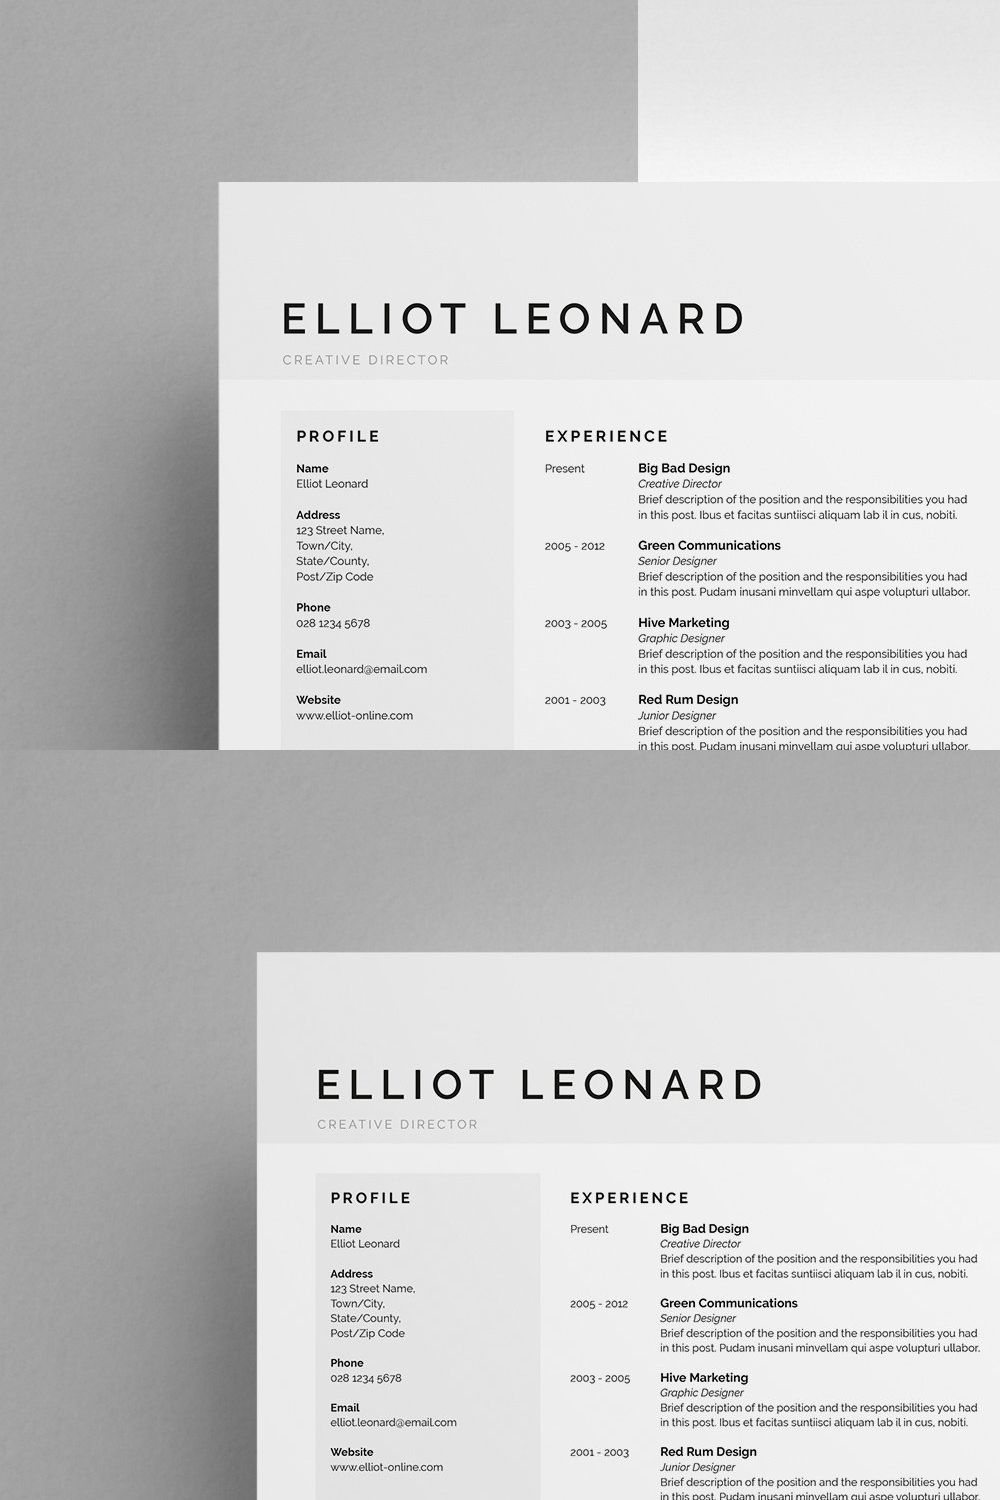 Resume/CV - Elliot pinterest preview image.